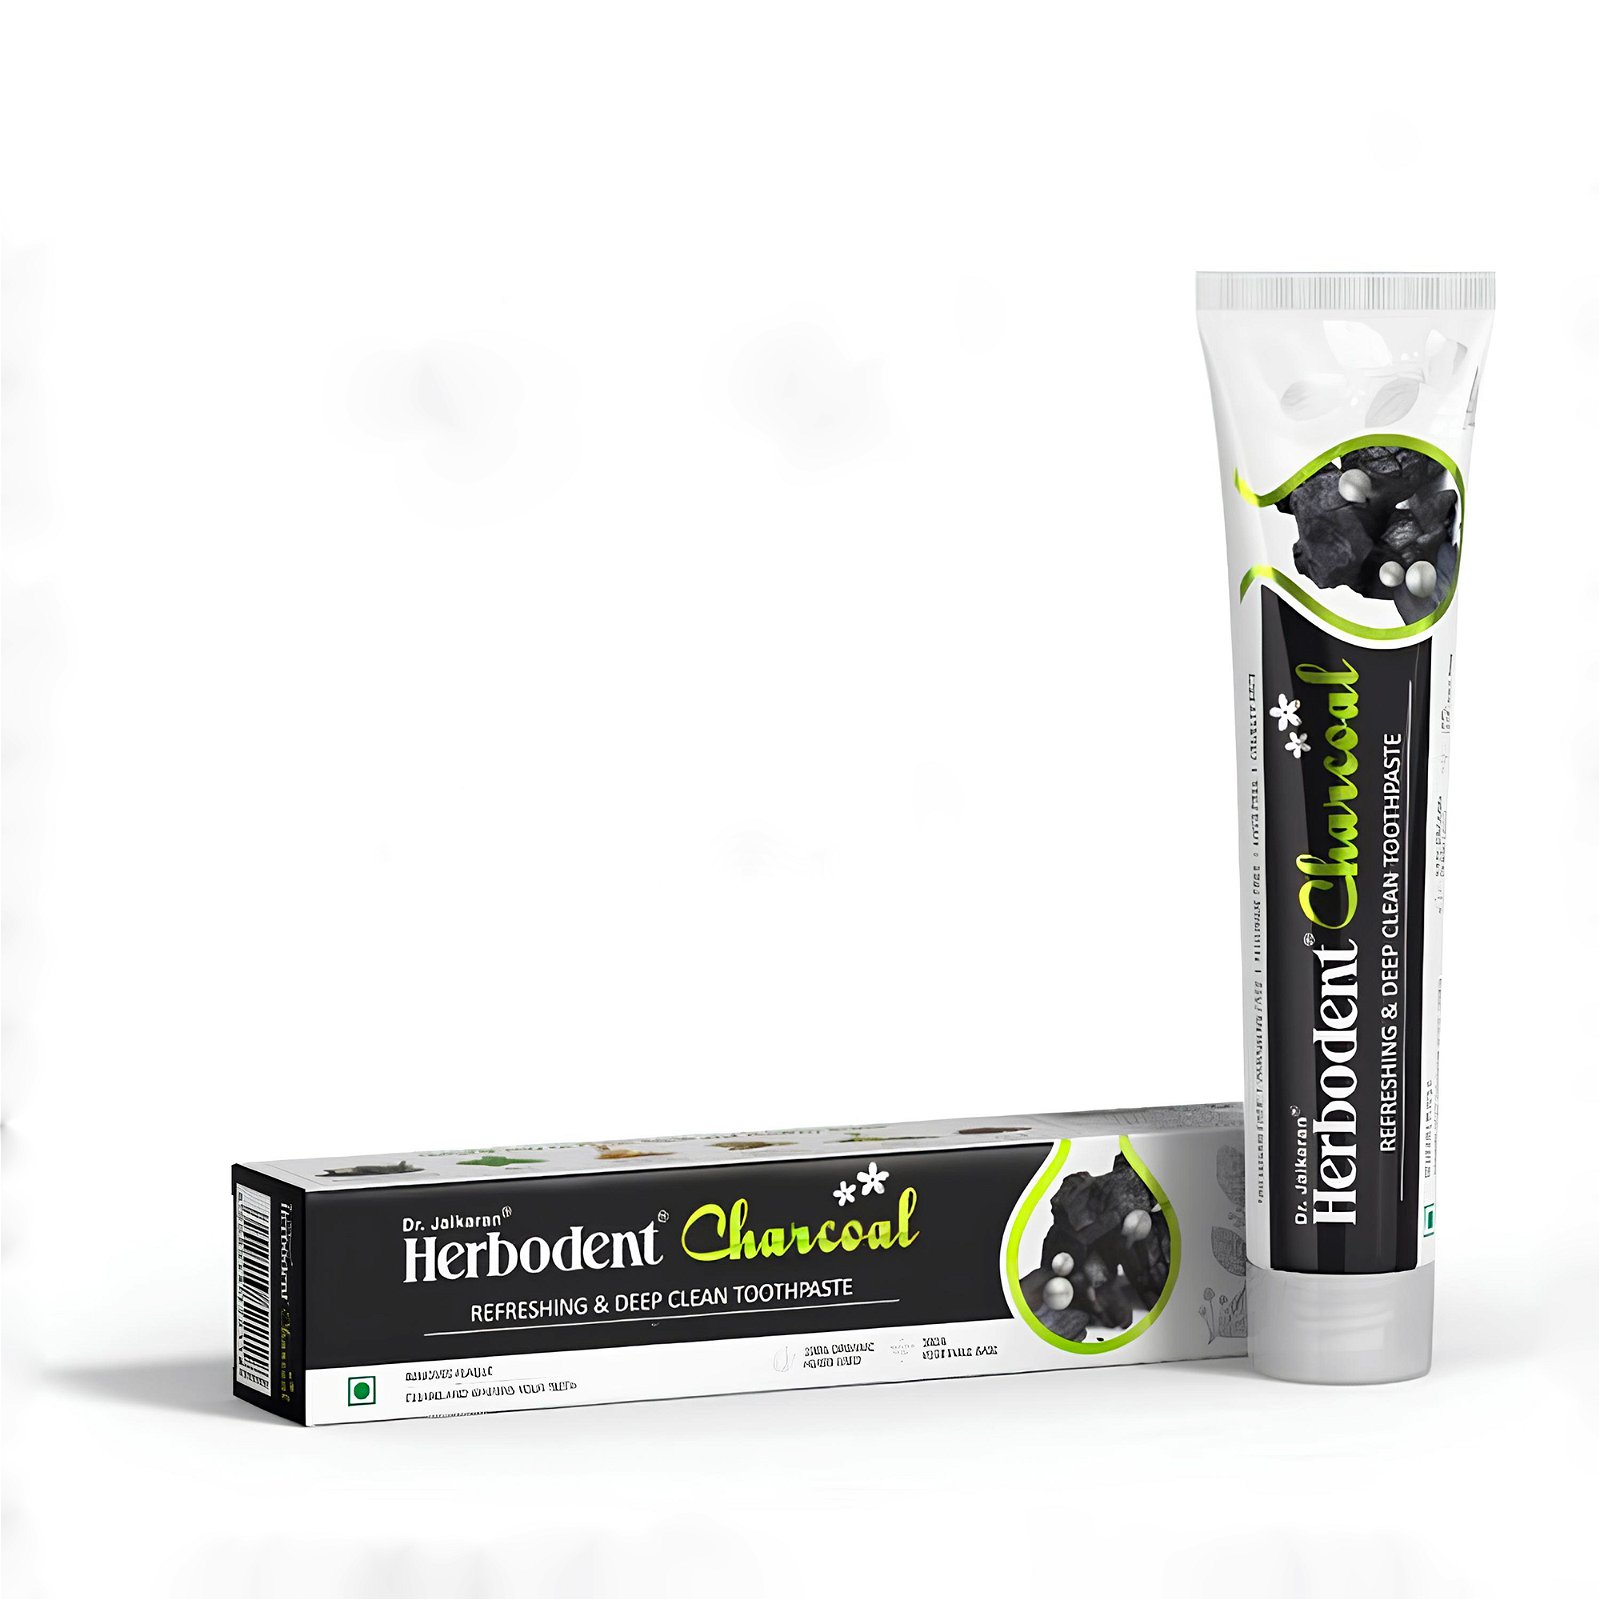 Купить Зубная паста Хербодент Чаркоул (Активированный уголь), Dr. Jaikaran, 100 гр в интернет-магазине #store#